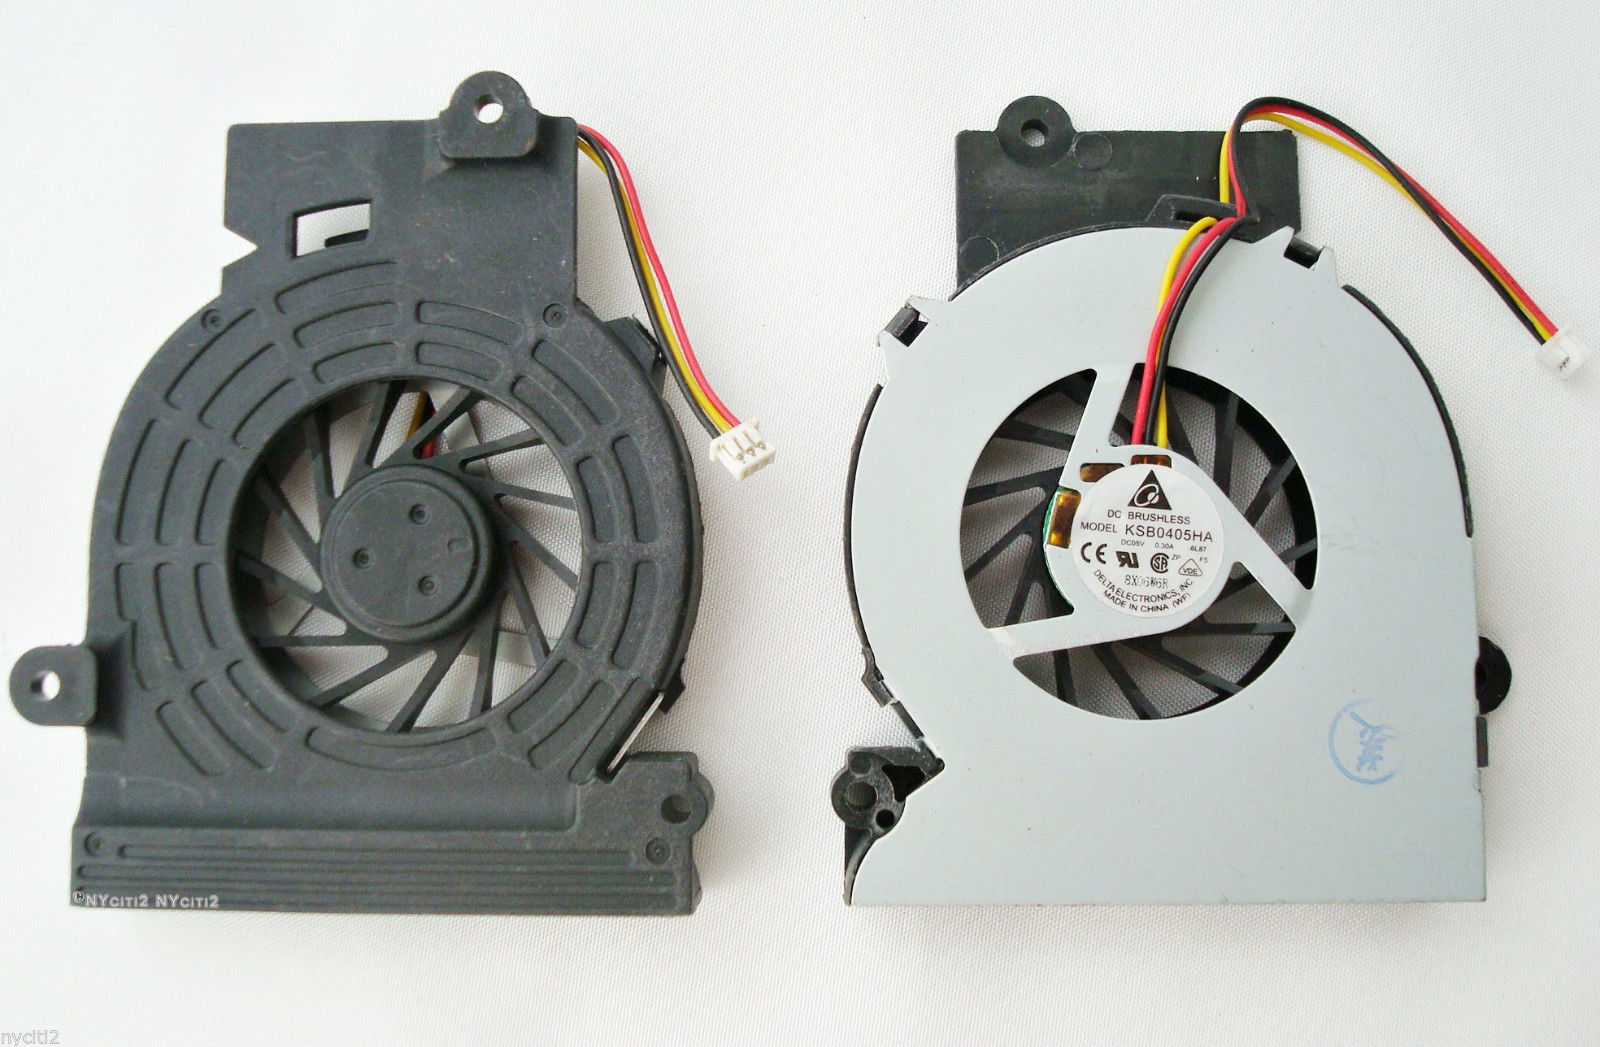 Authentic Replacement Fan for Fujitsu Amilo Pro L1310G L7320 L7320GW Brand NEW - Click Image to Close